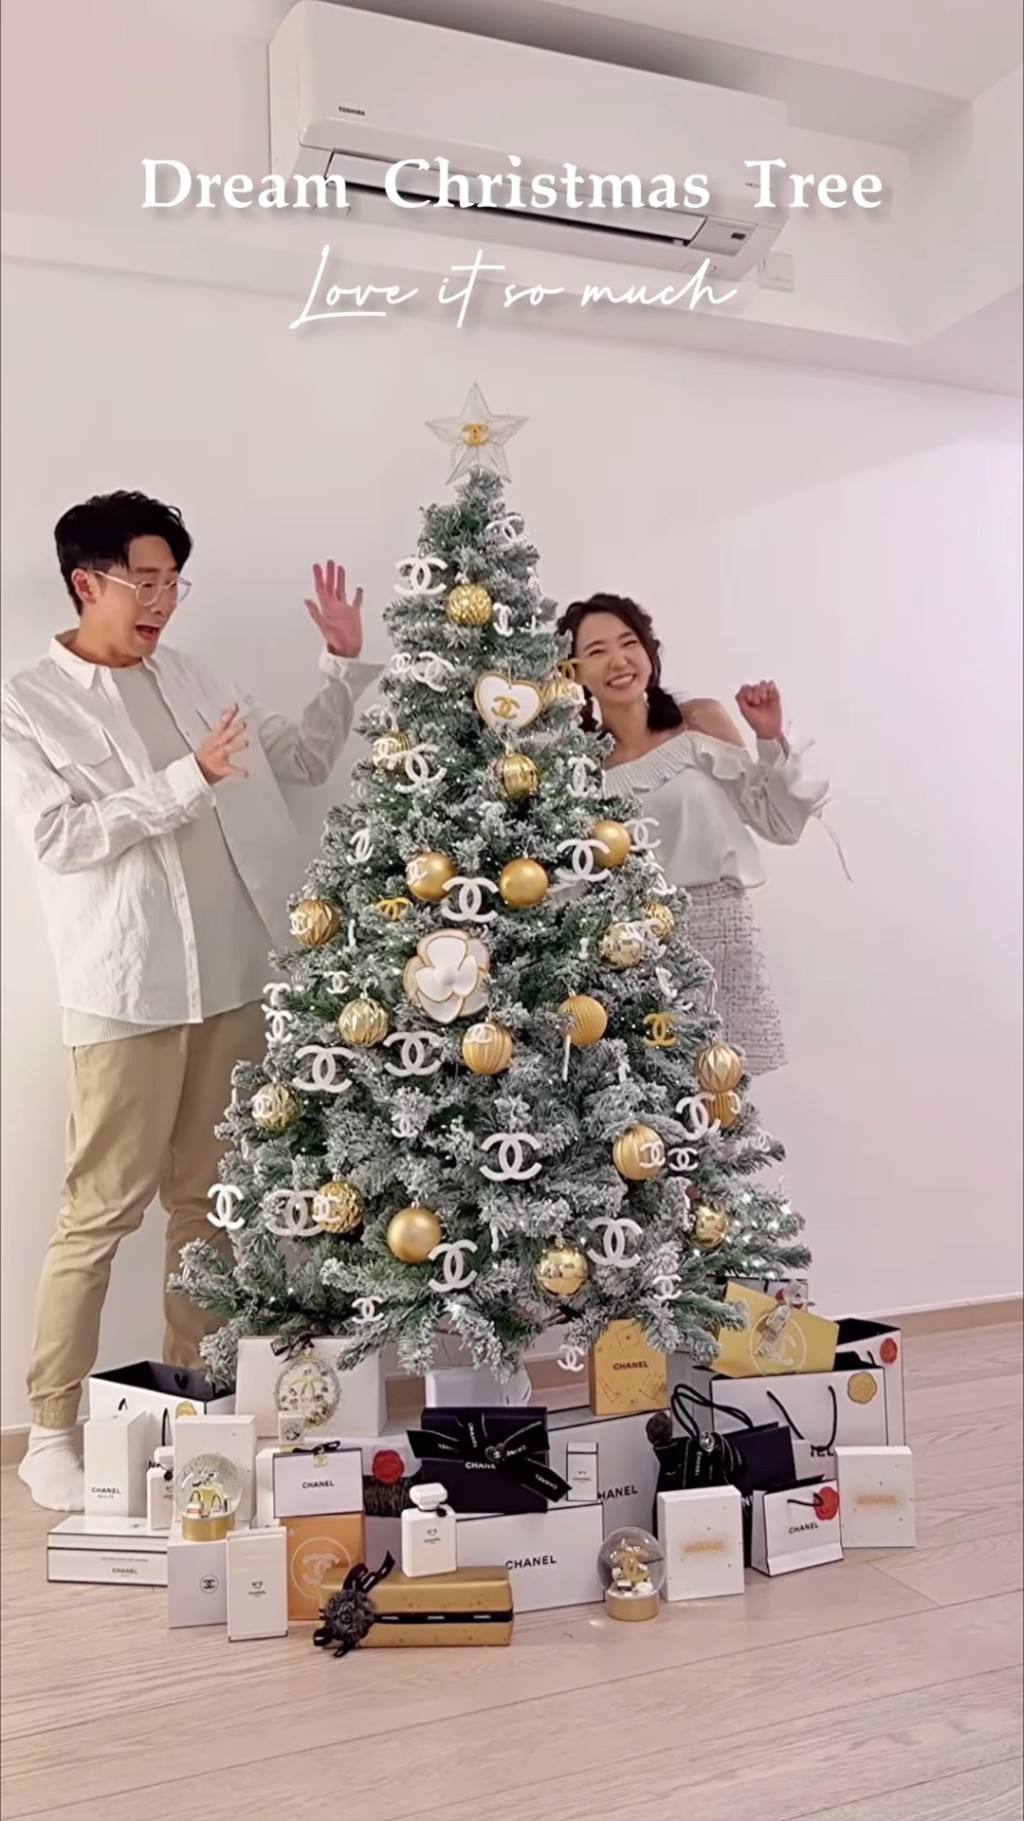 日前於IG分享為聖誕樹裝飾的短片。